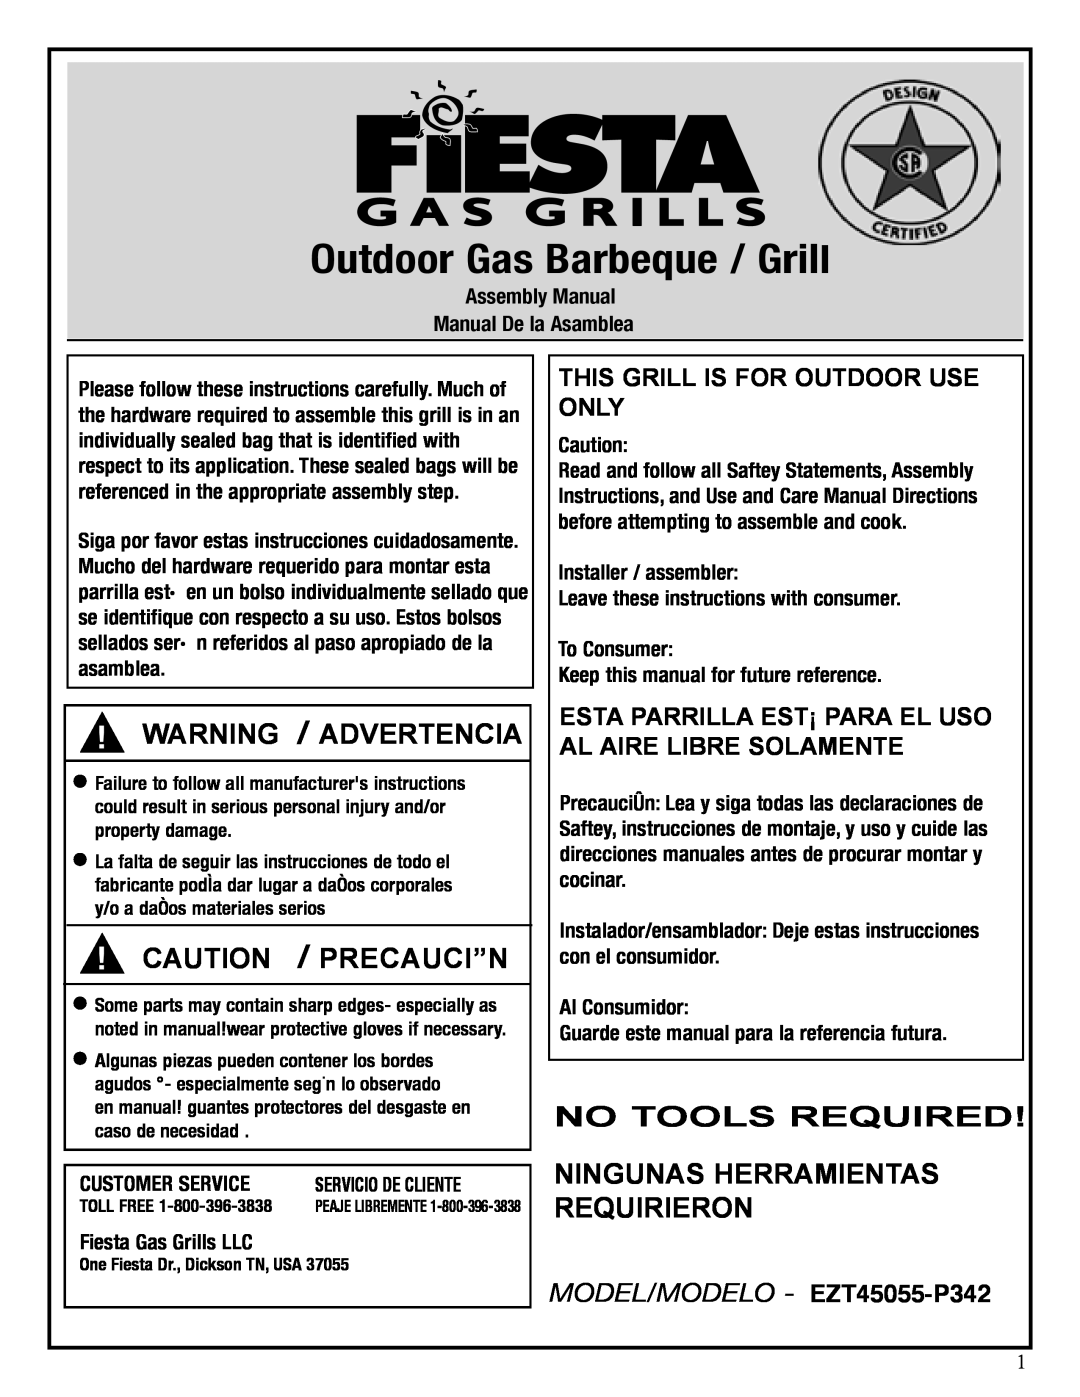 Fiesta EZT45055-P342 manual Warning / Advertencia, Caution / Precauci”N, Assembly Manual Manual De la Asamblea 